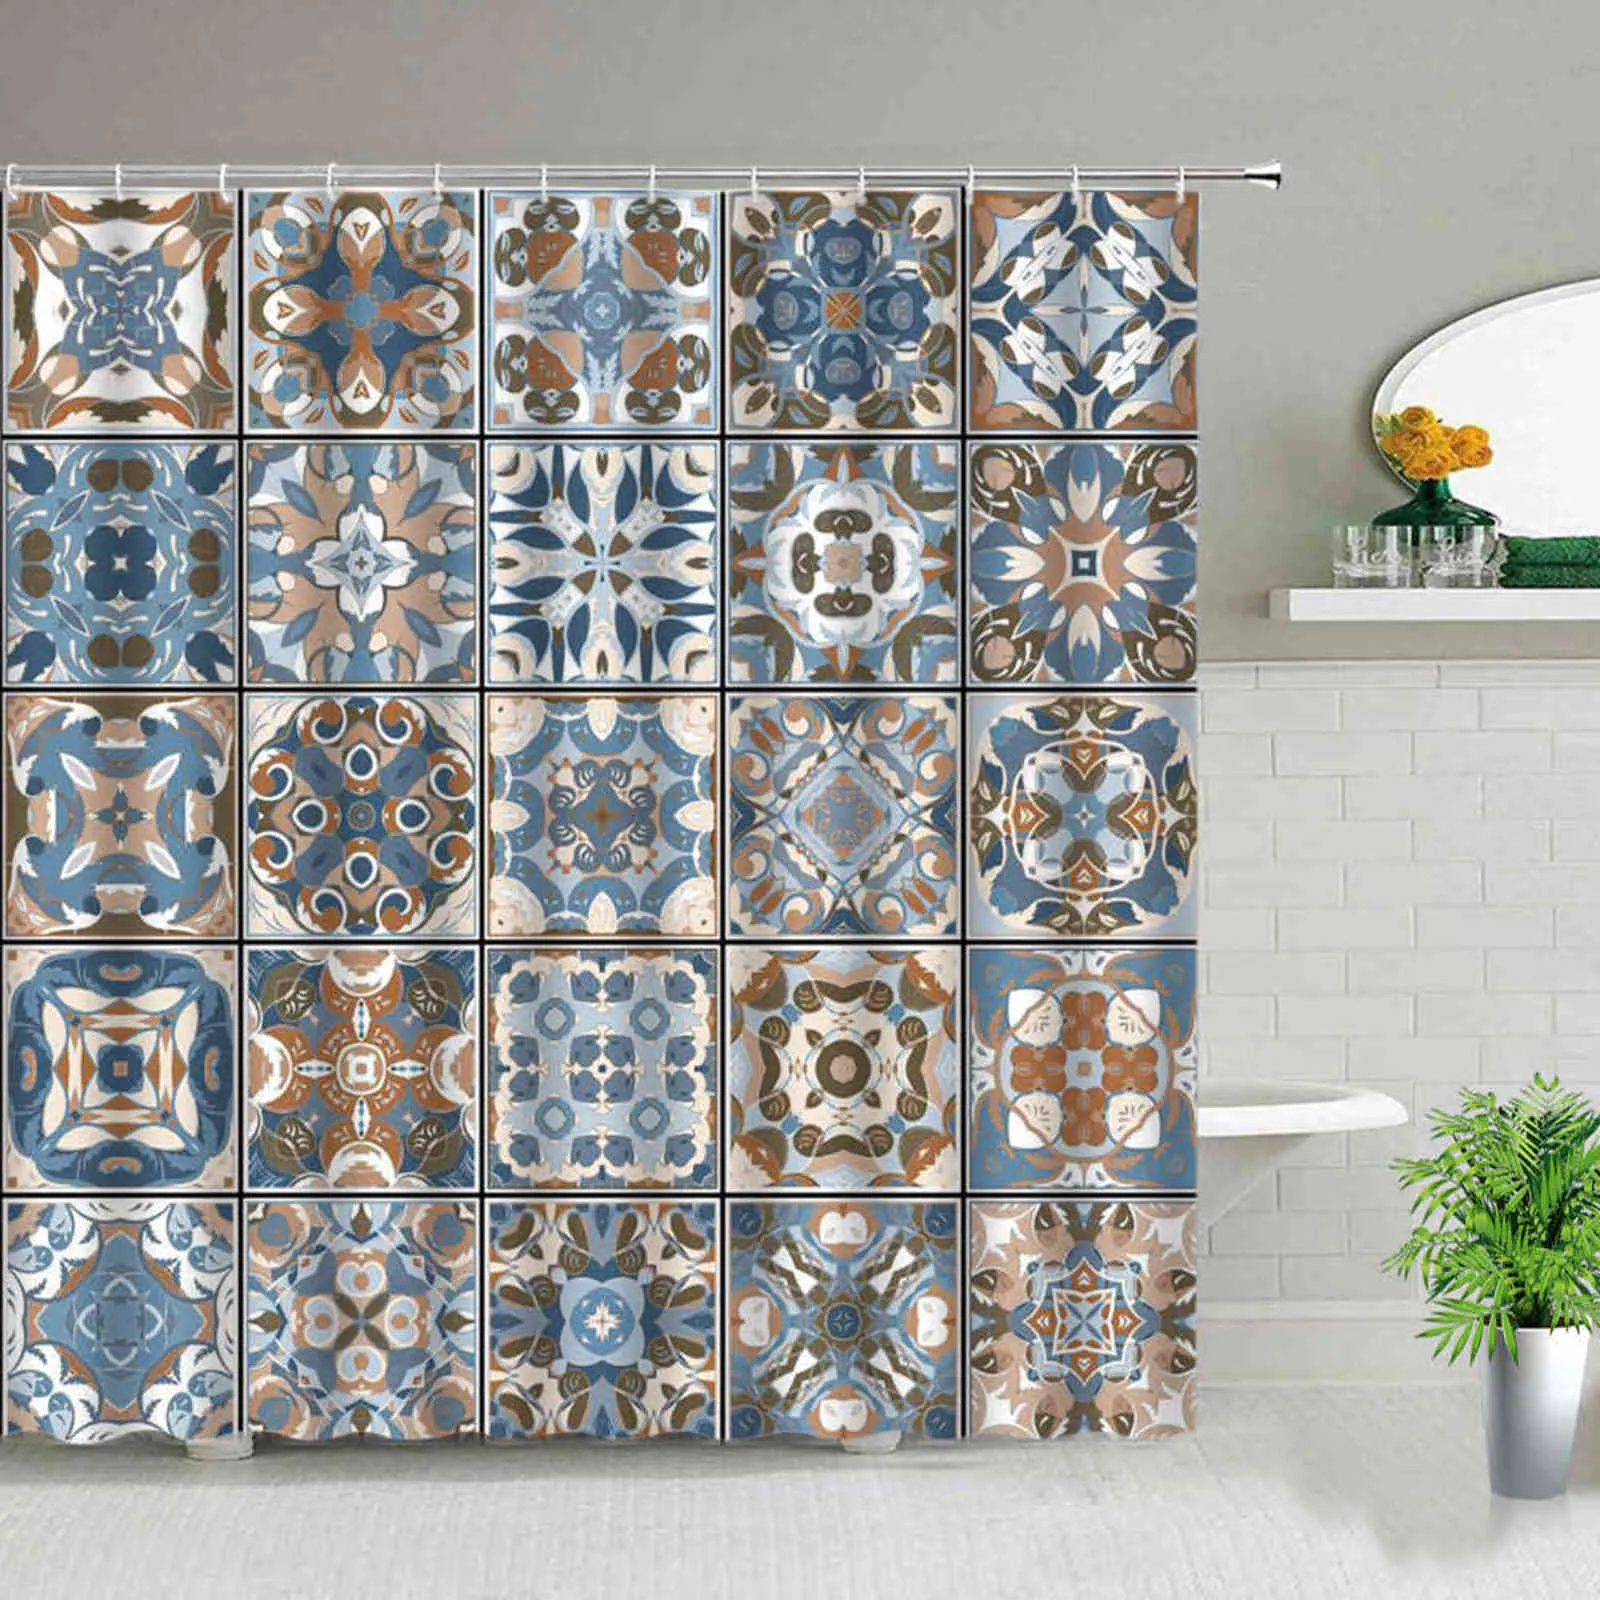 Motif de patchwork de rideau de douche marocain avec différents rideaux de salle de bain tunisiens originaux colorés, ensemble de décor avec crochets 211116